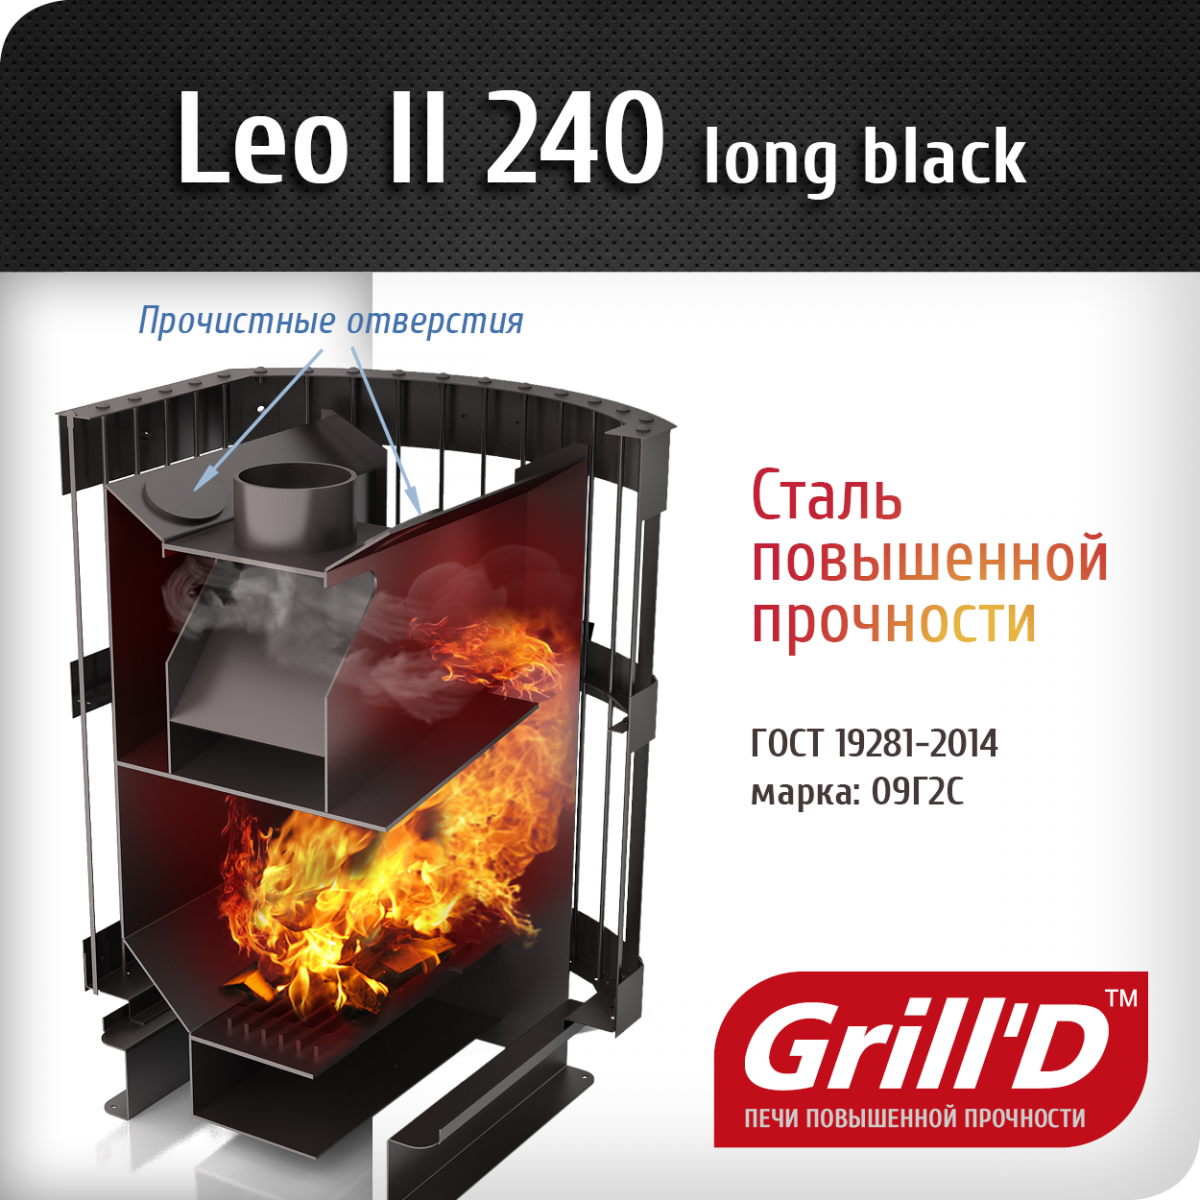 Фото товара Банная печь Grill'D Leo II 240 Long black. Изображение №2